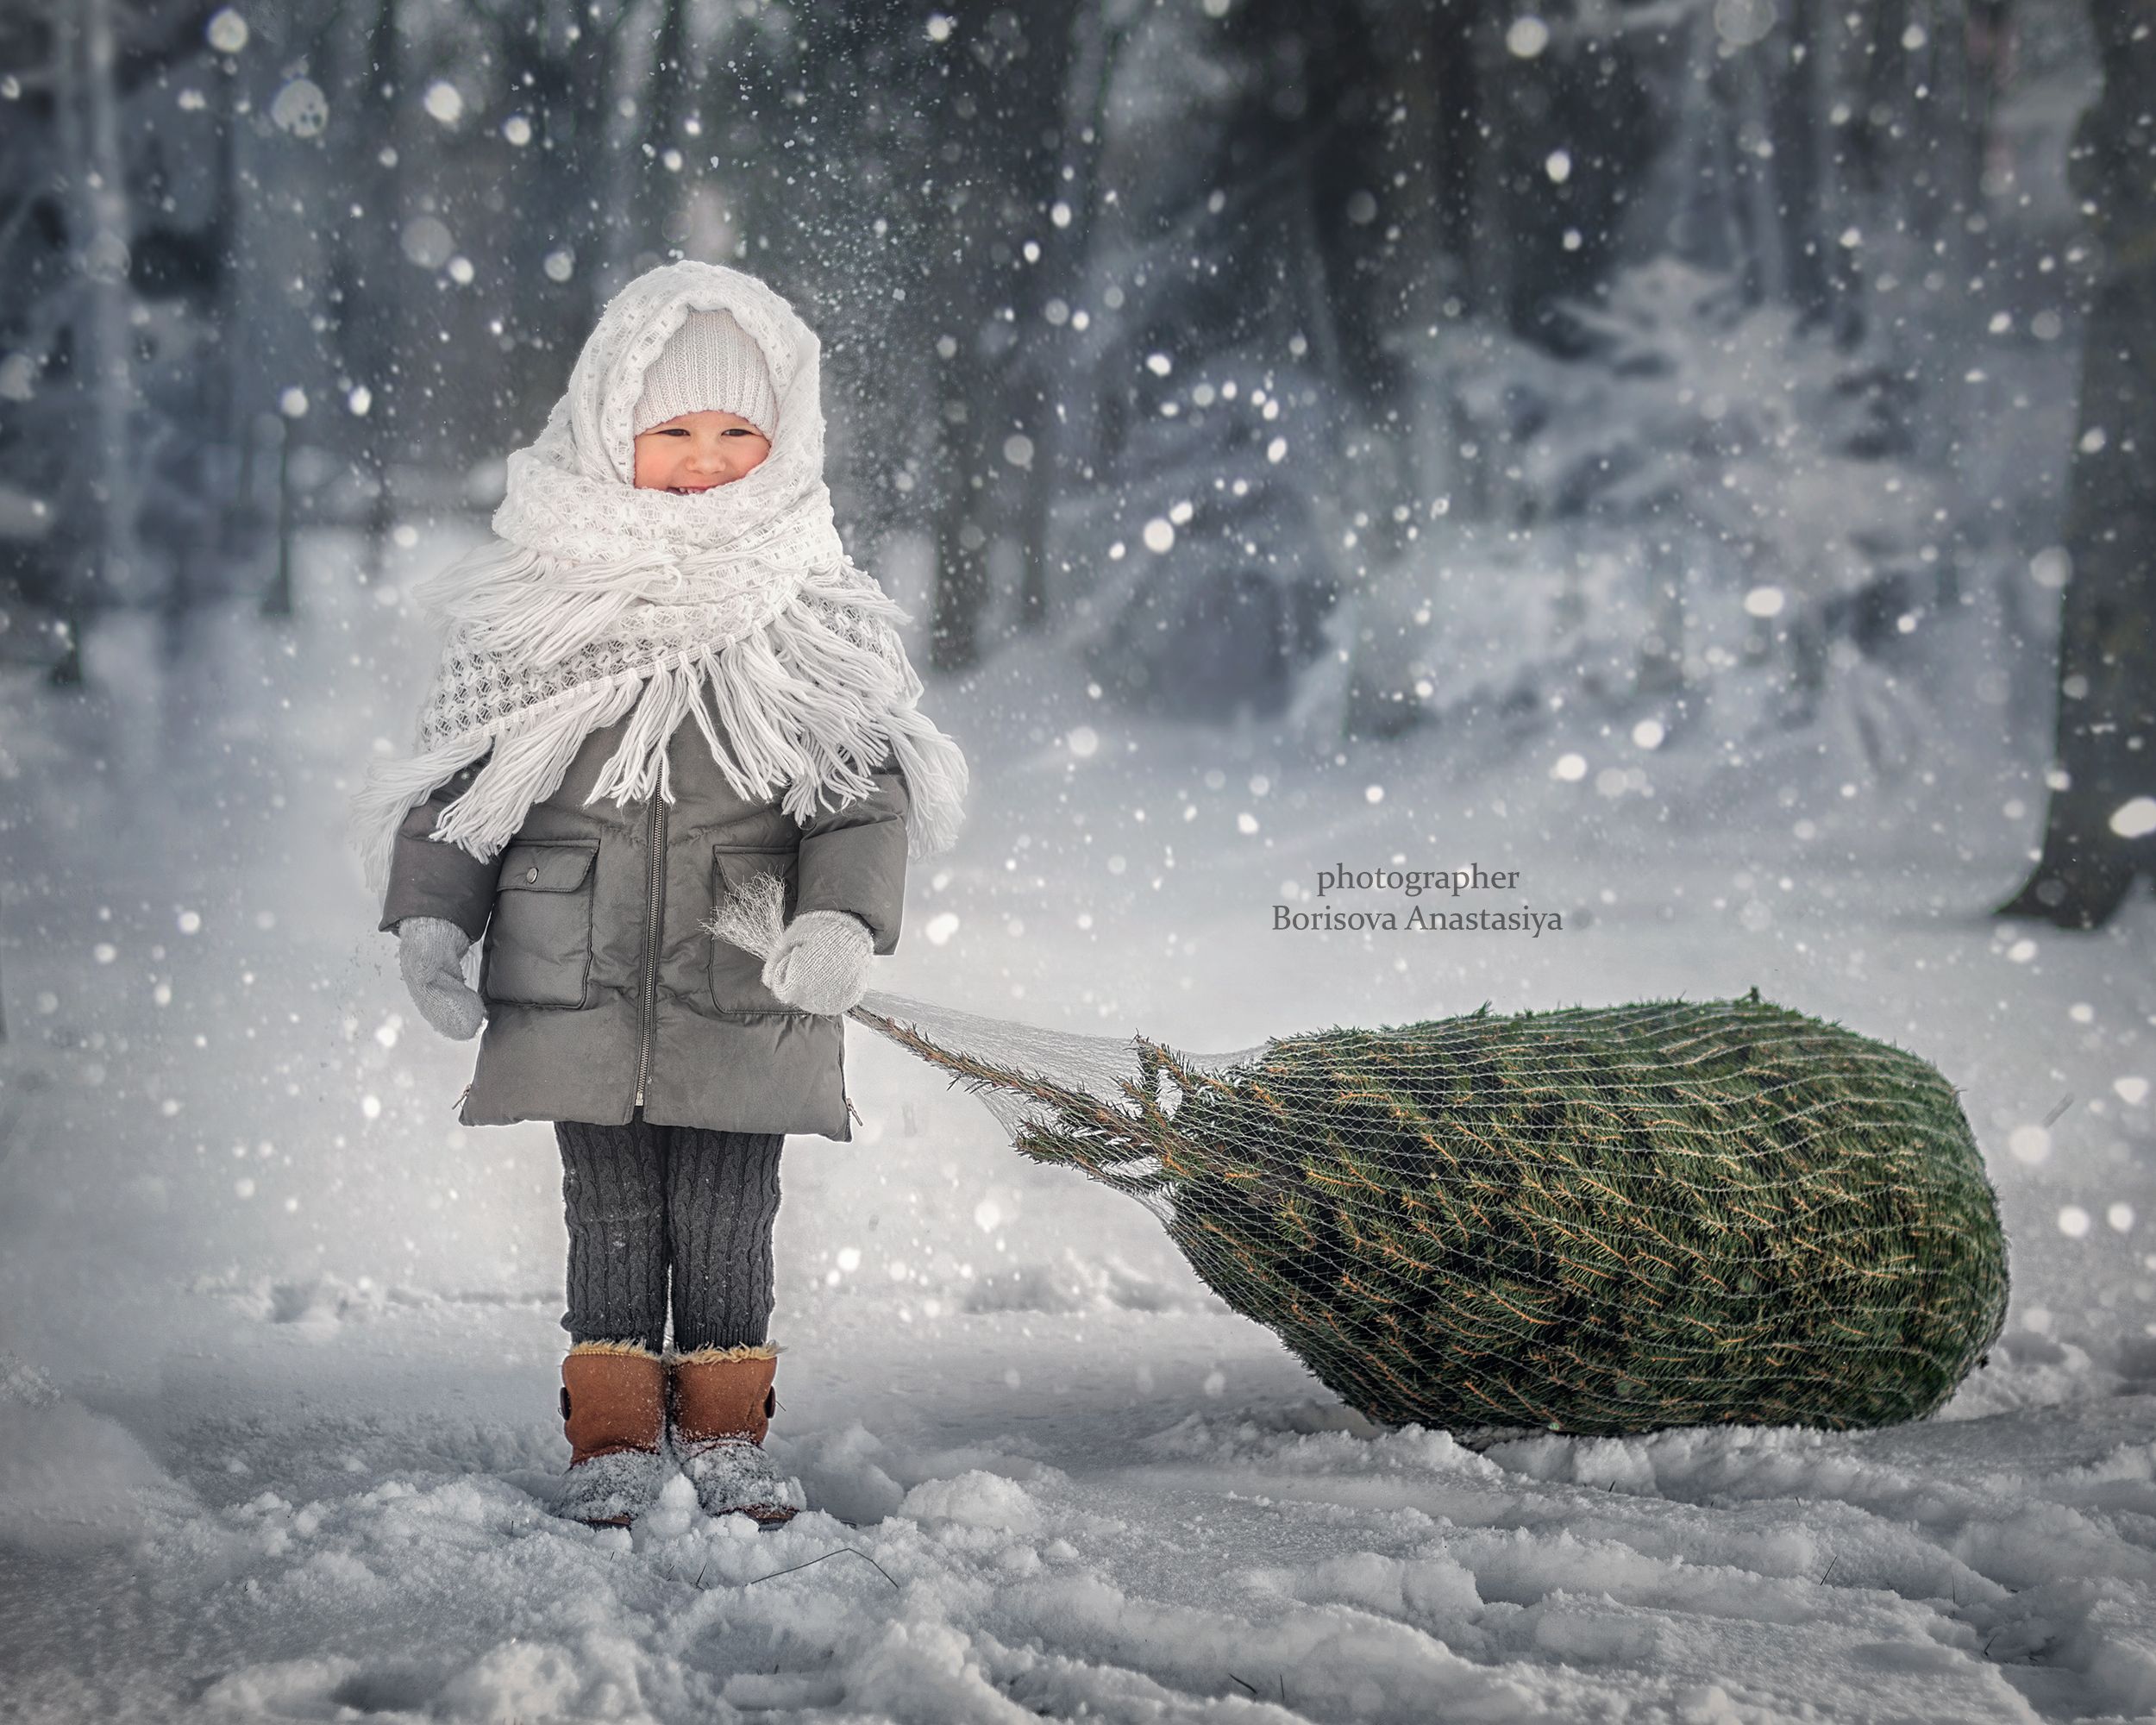 дети детский портрет рождество новый год подарок винтаж сказка ребенок девочка ёлка, Борисова Анастасия